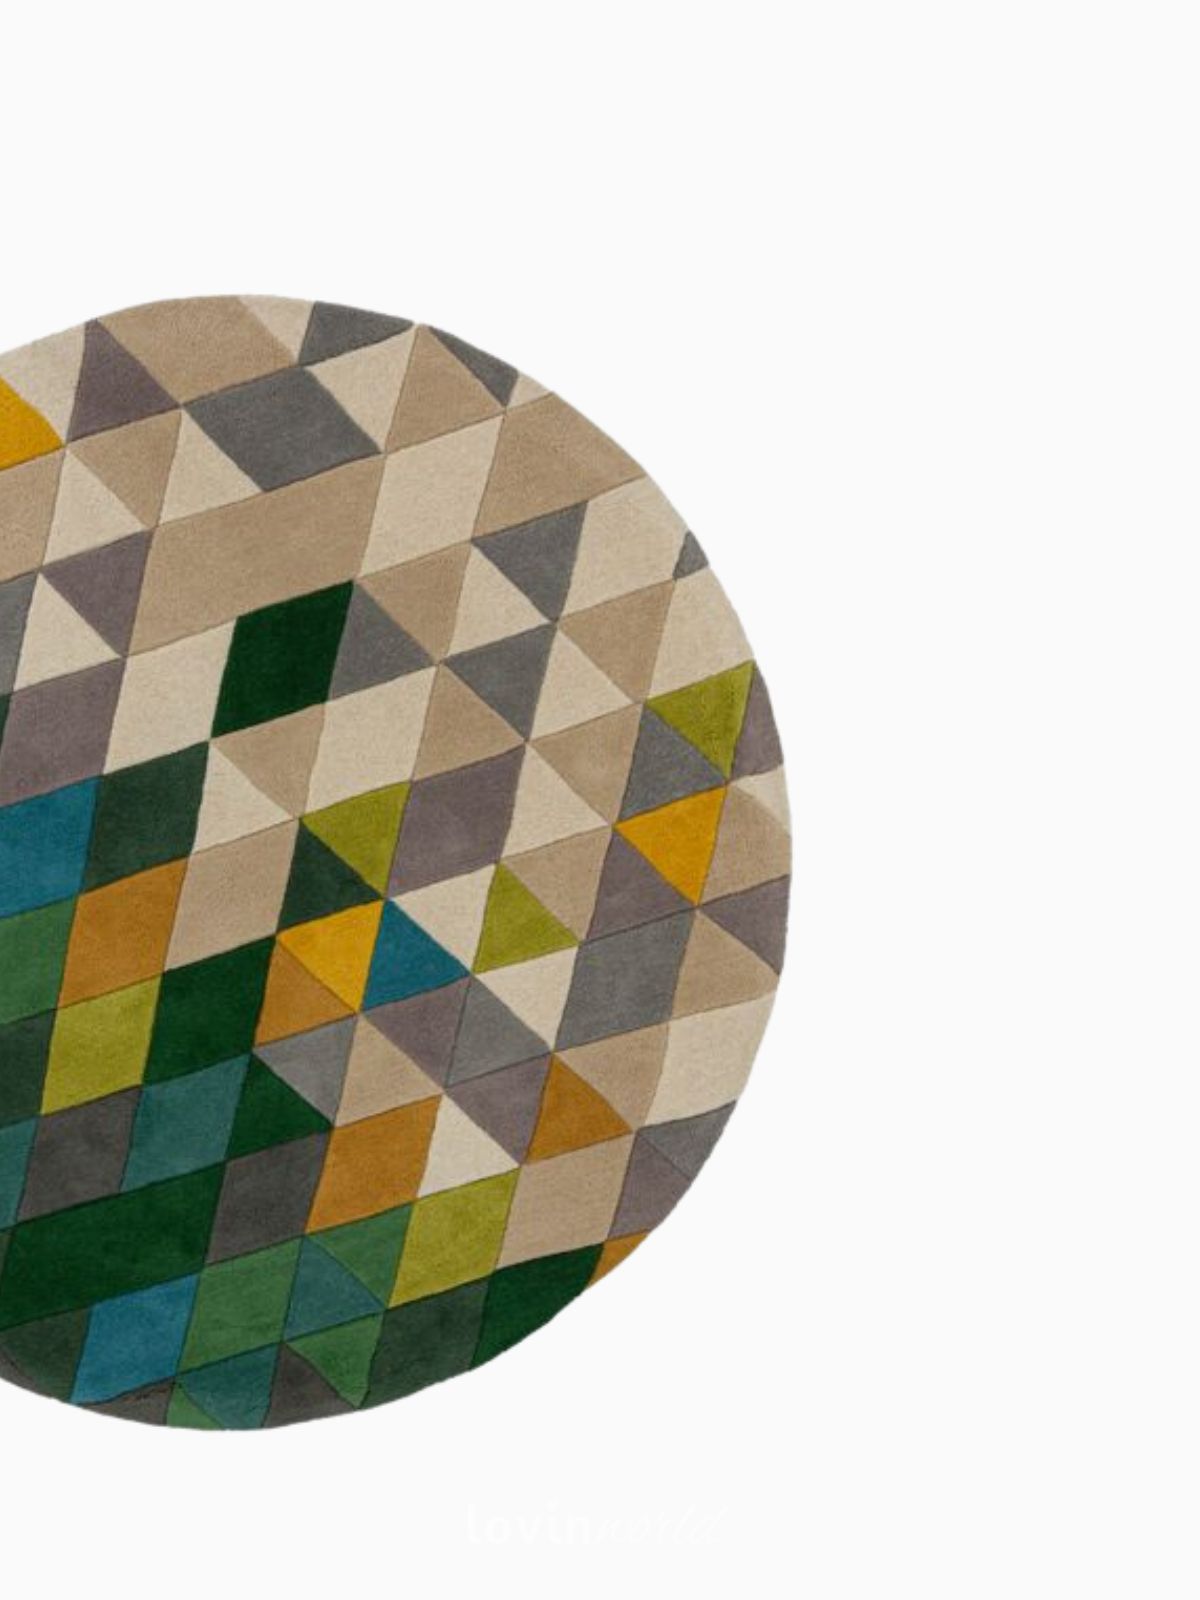 Tappeto rotondo di design Prism in lana, multicolore 160x160 cm.-4